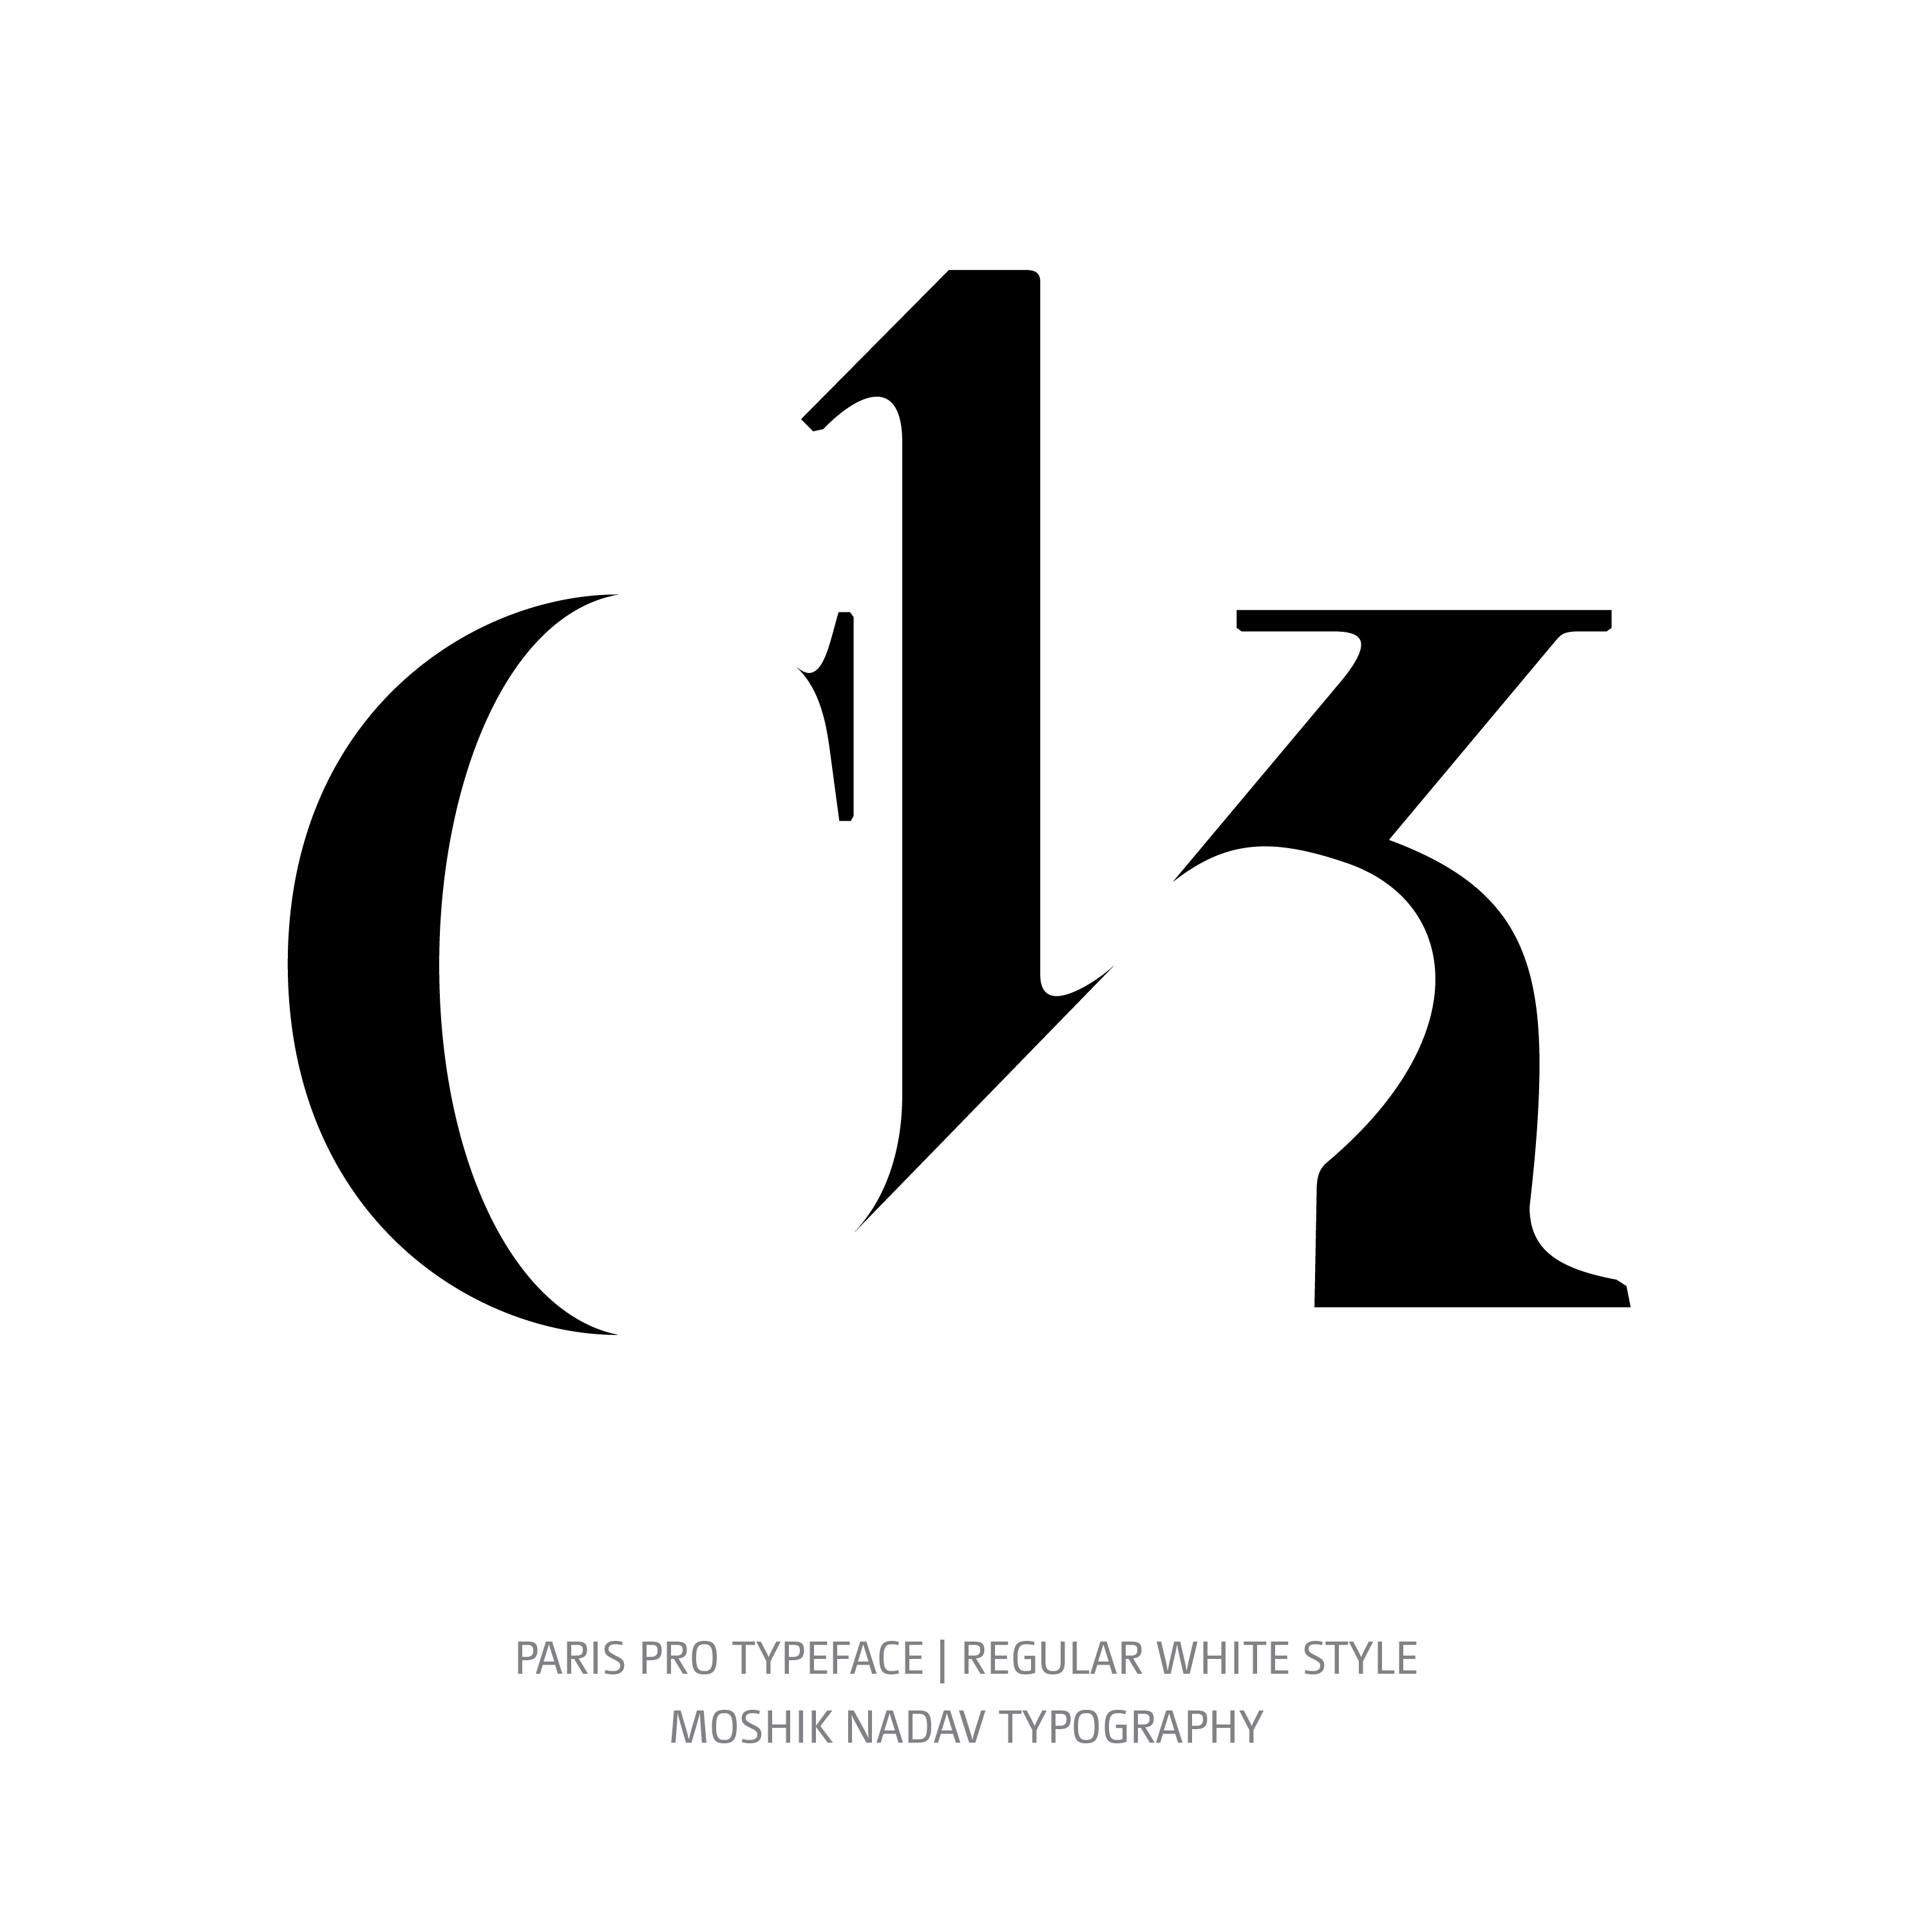 Paris Pro Typeface Regular White ck alternate ligature